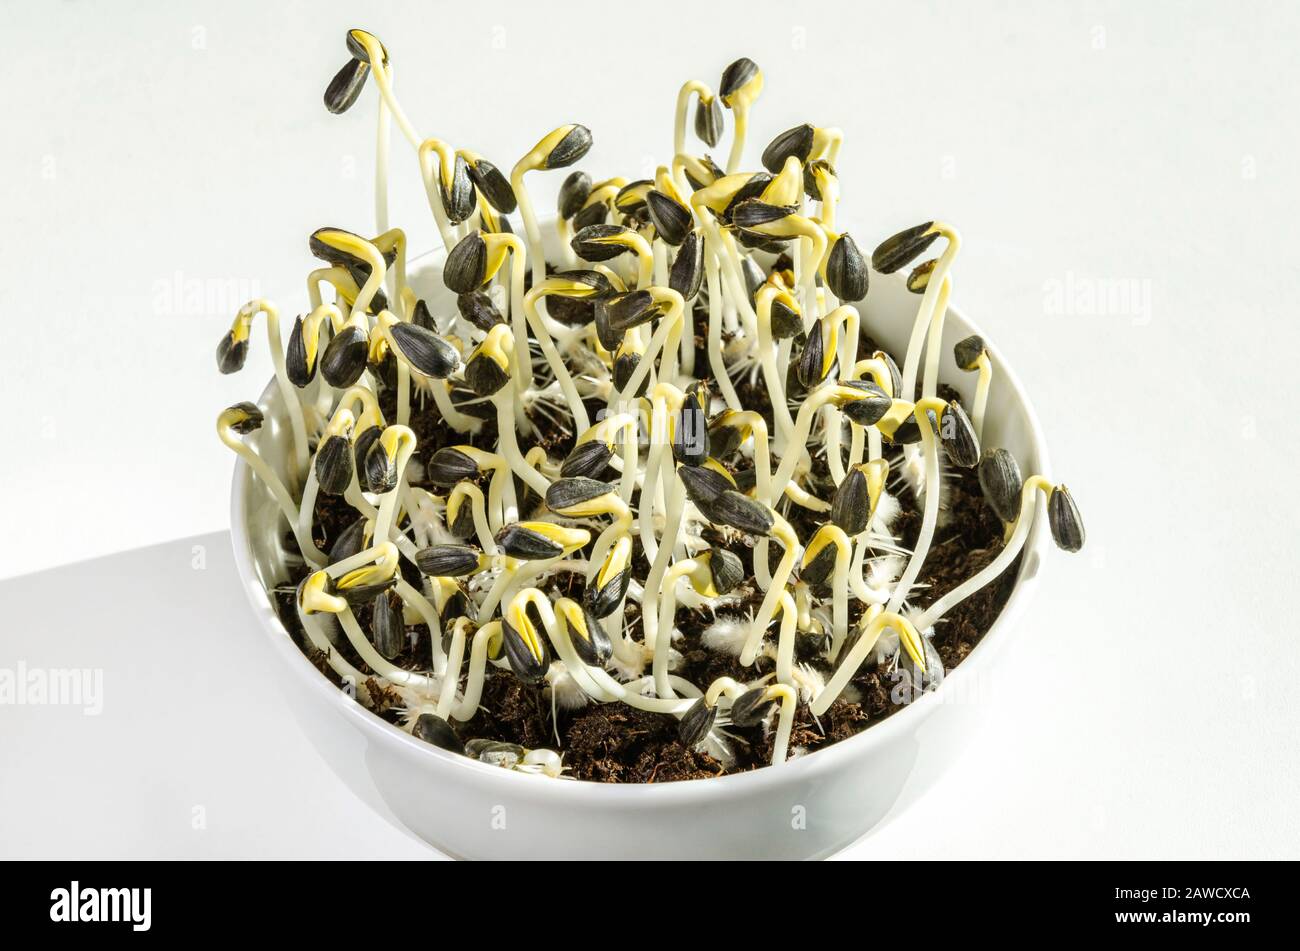 Sonnenblumen sprießen in einer weißen Schüssel und wachsen im Töpfelkompost. Sprosse und Mikrogrün von Helianthus annuus, der gemeinsamen Sonnenblume. Stockfoto